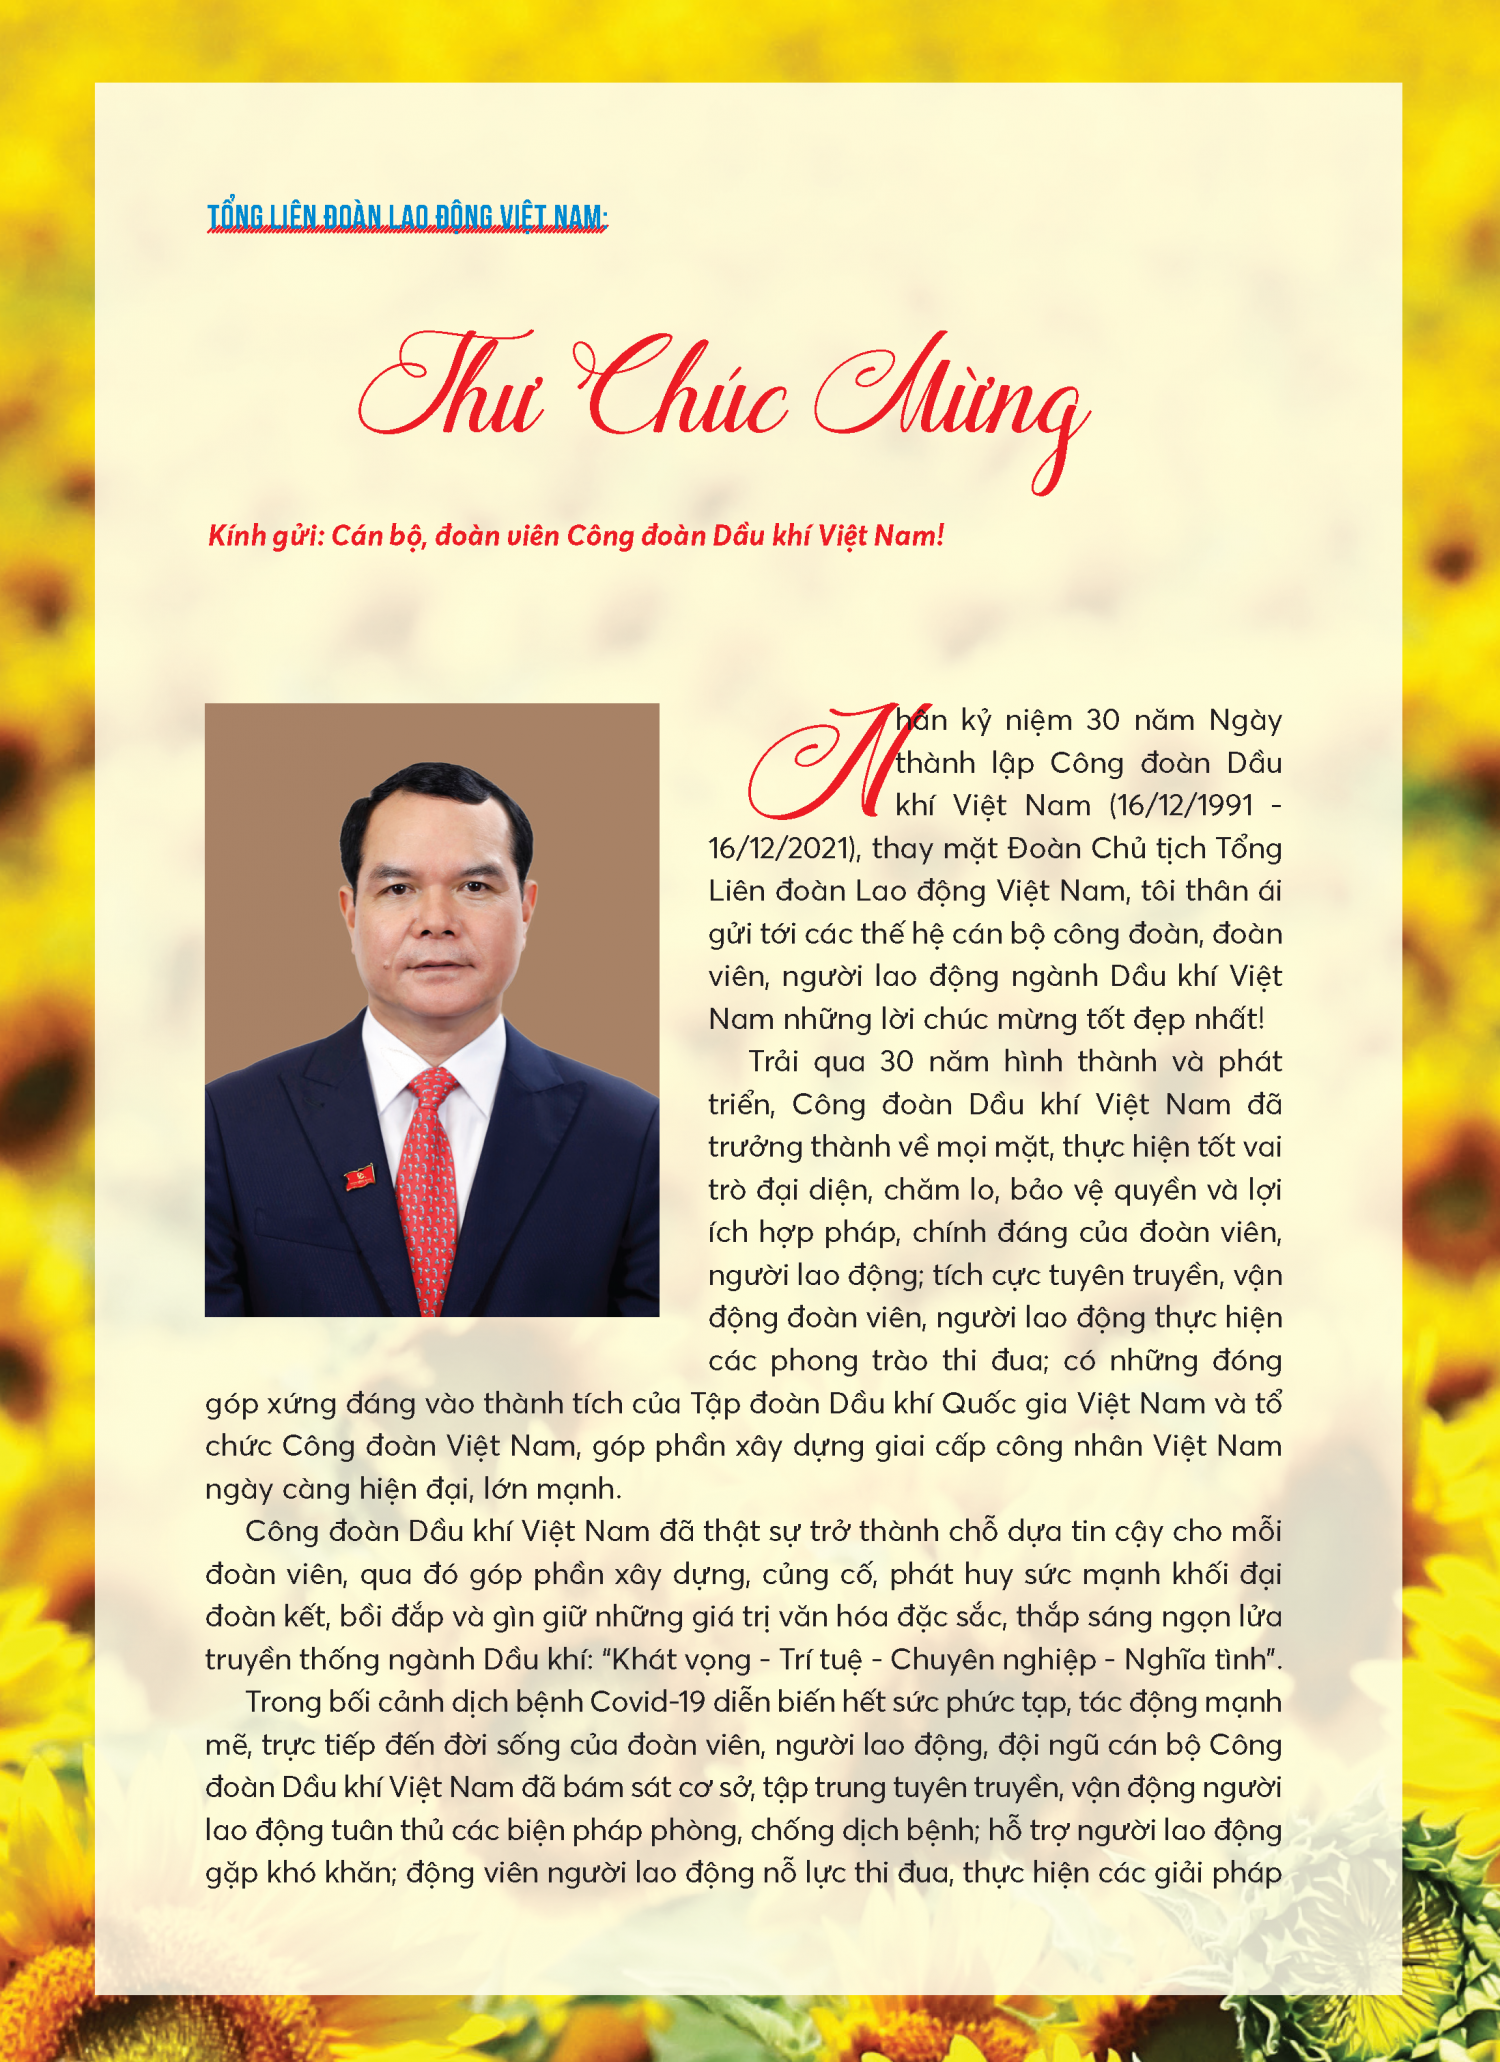 Chủ tịch Tổng Liên đoàn Lao động Việt Nam gửi thư chúc mừng Công đoàn Dầu khí Việt Nam